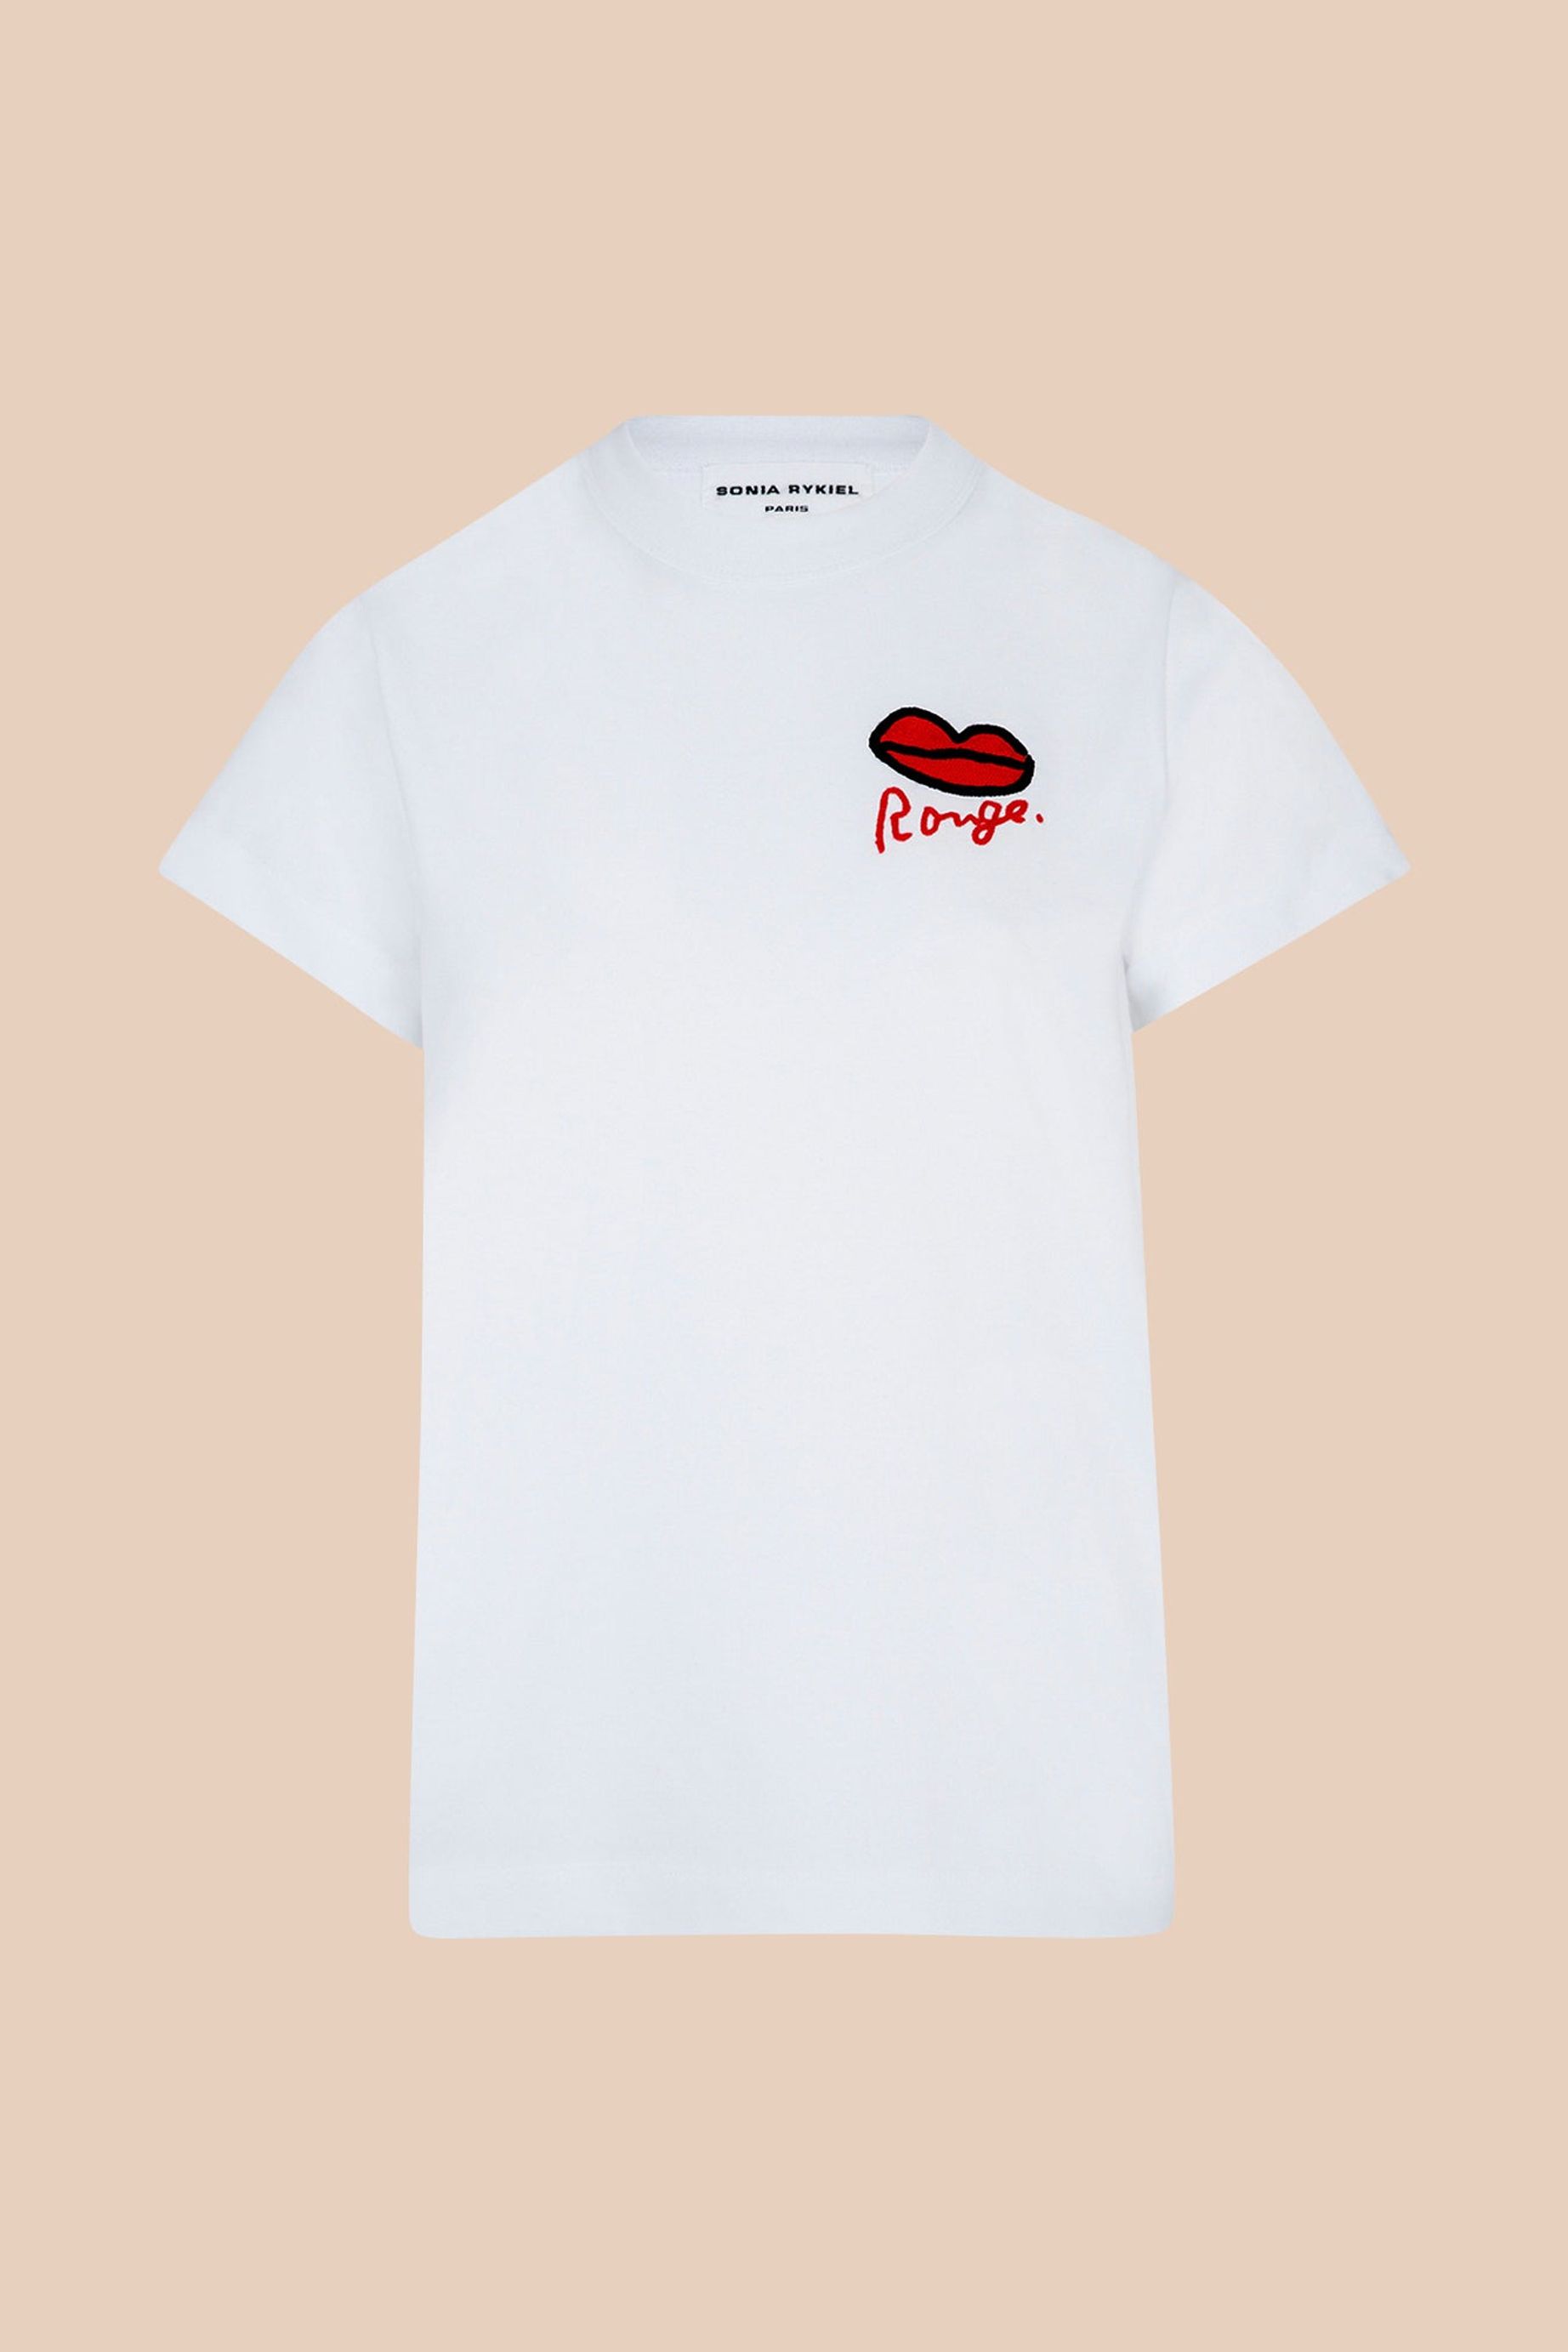 Sonia Rykiel for H&M T-shirts en mailles tricot\u00e9es rose-noir motif ray\u00e9 Mode Hauts T-shirts en mailles tricotées 